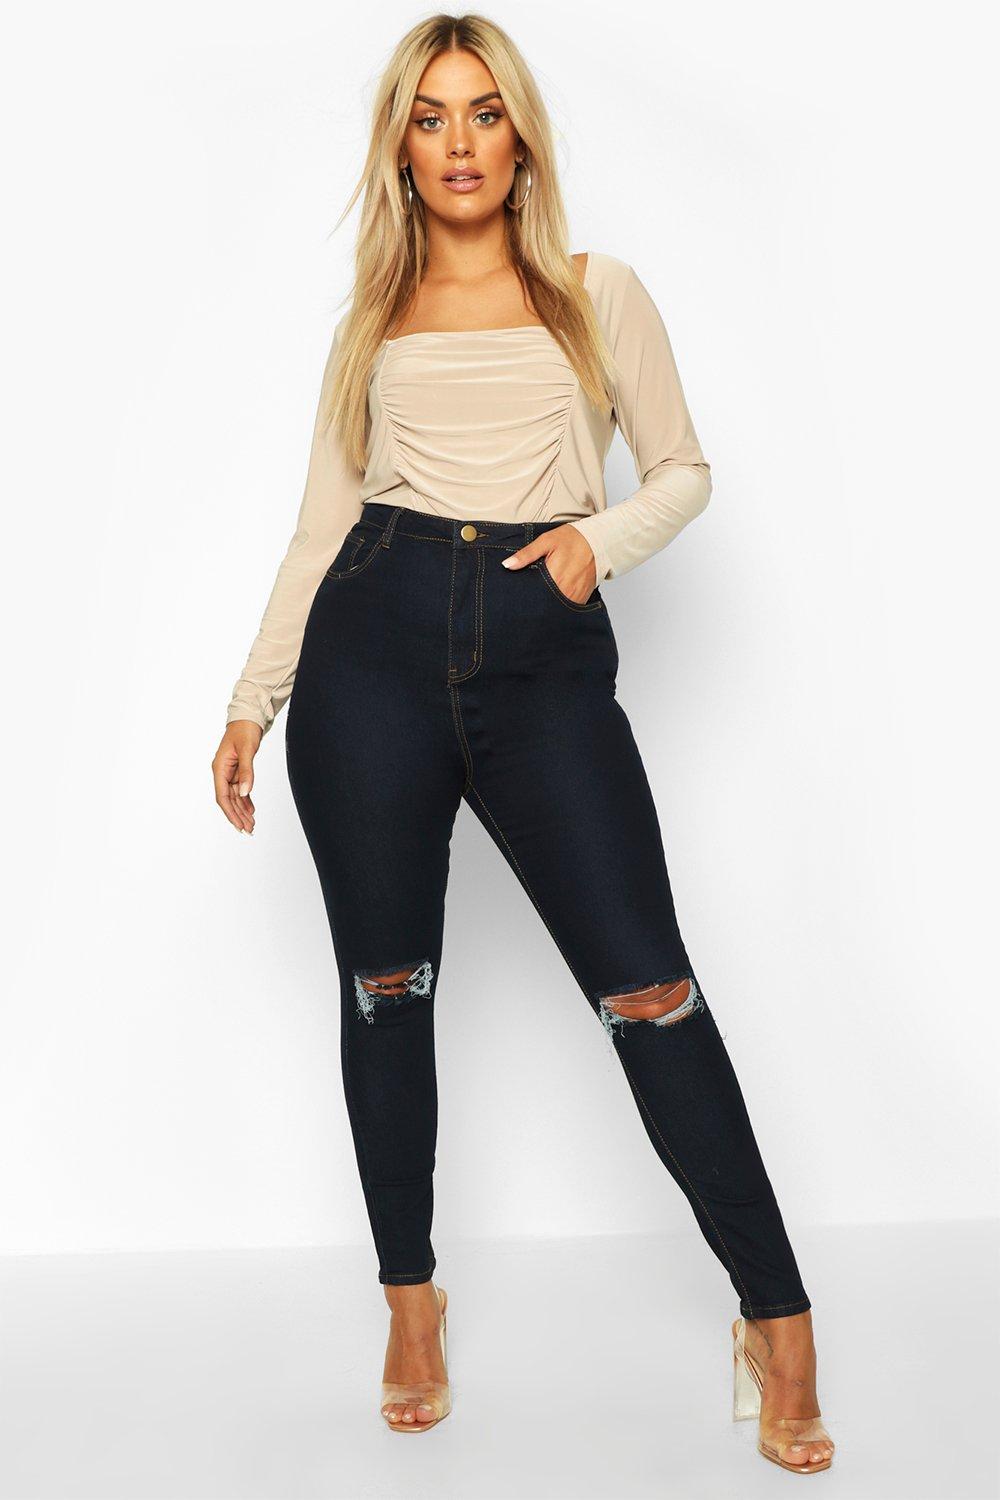 size 22 women's jeans